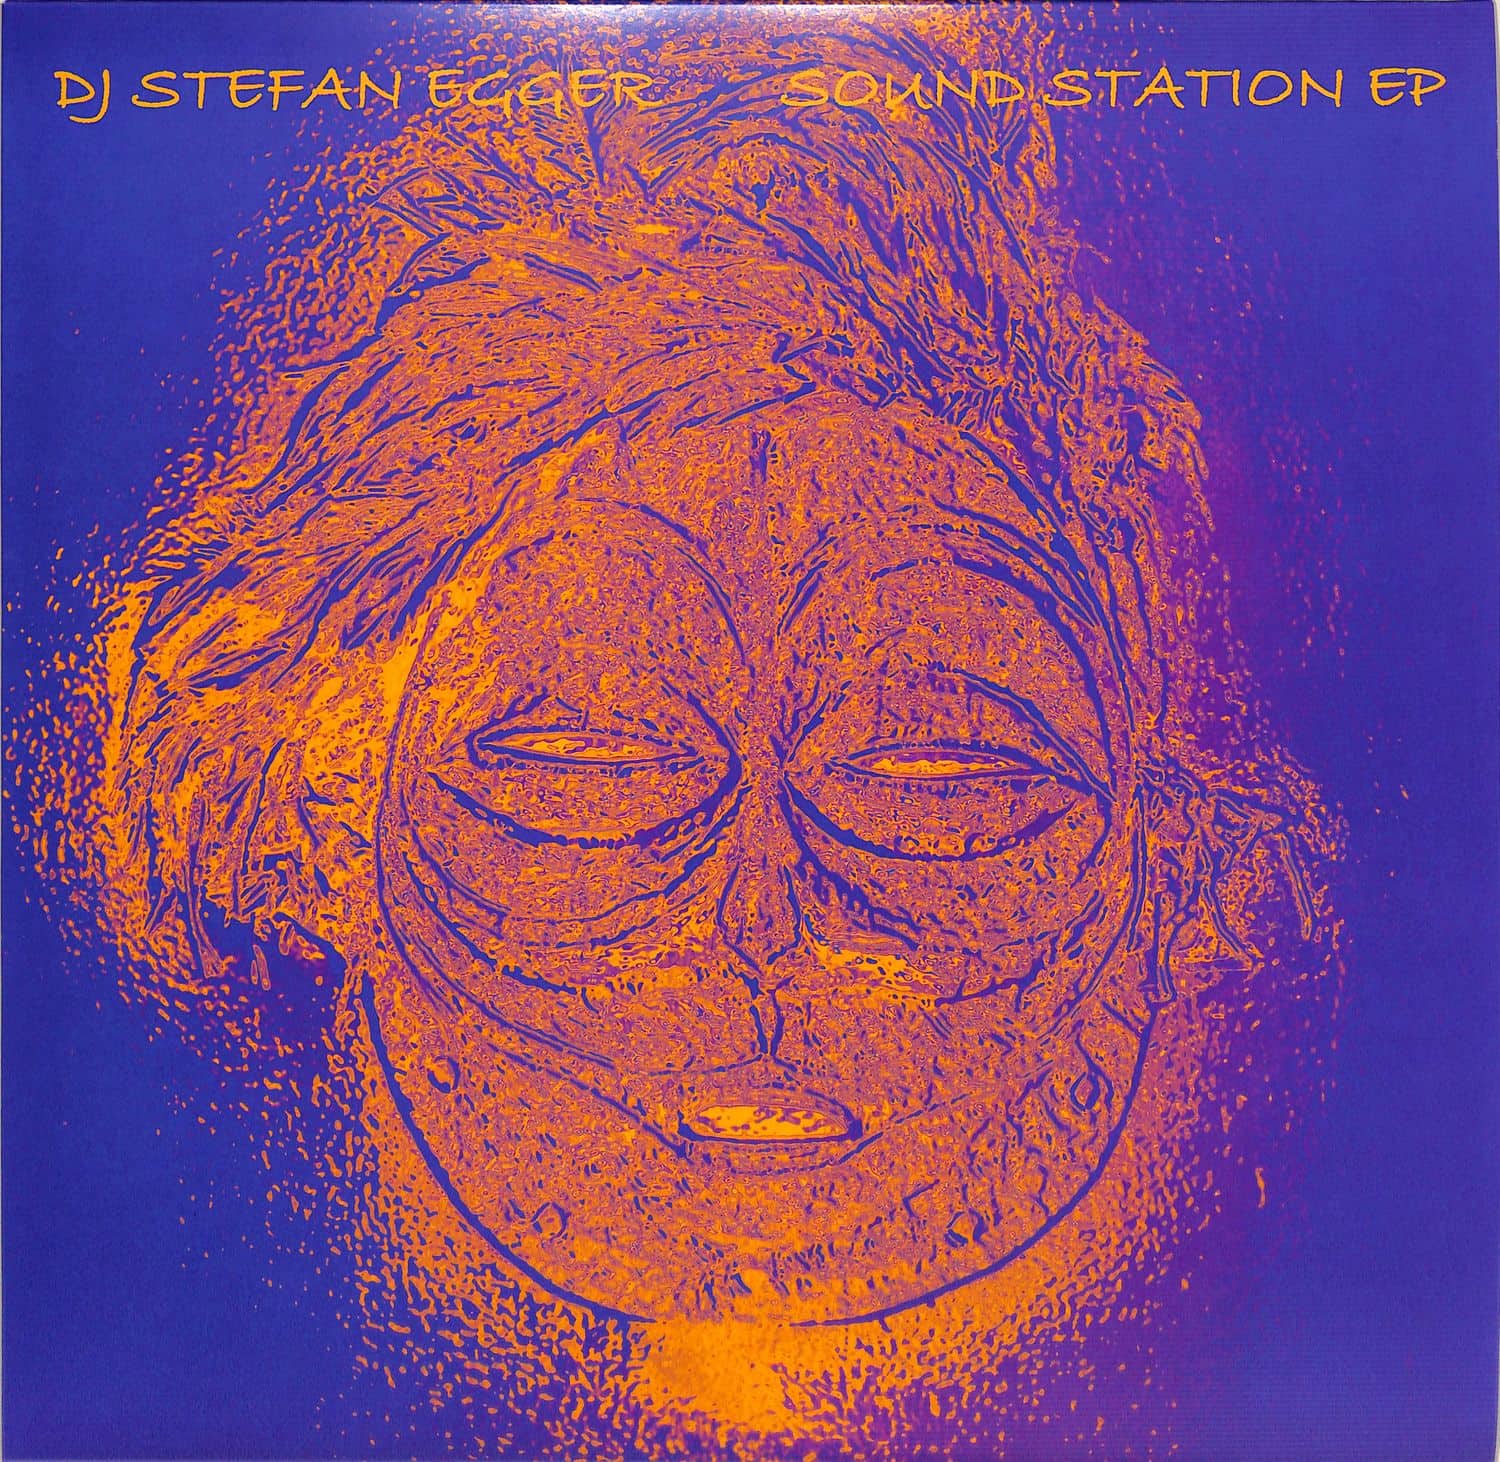 DJ Stefan Egger - SOUND STATION EP